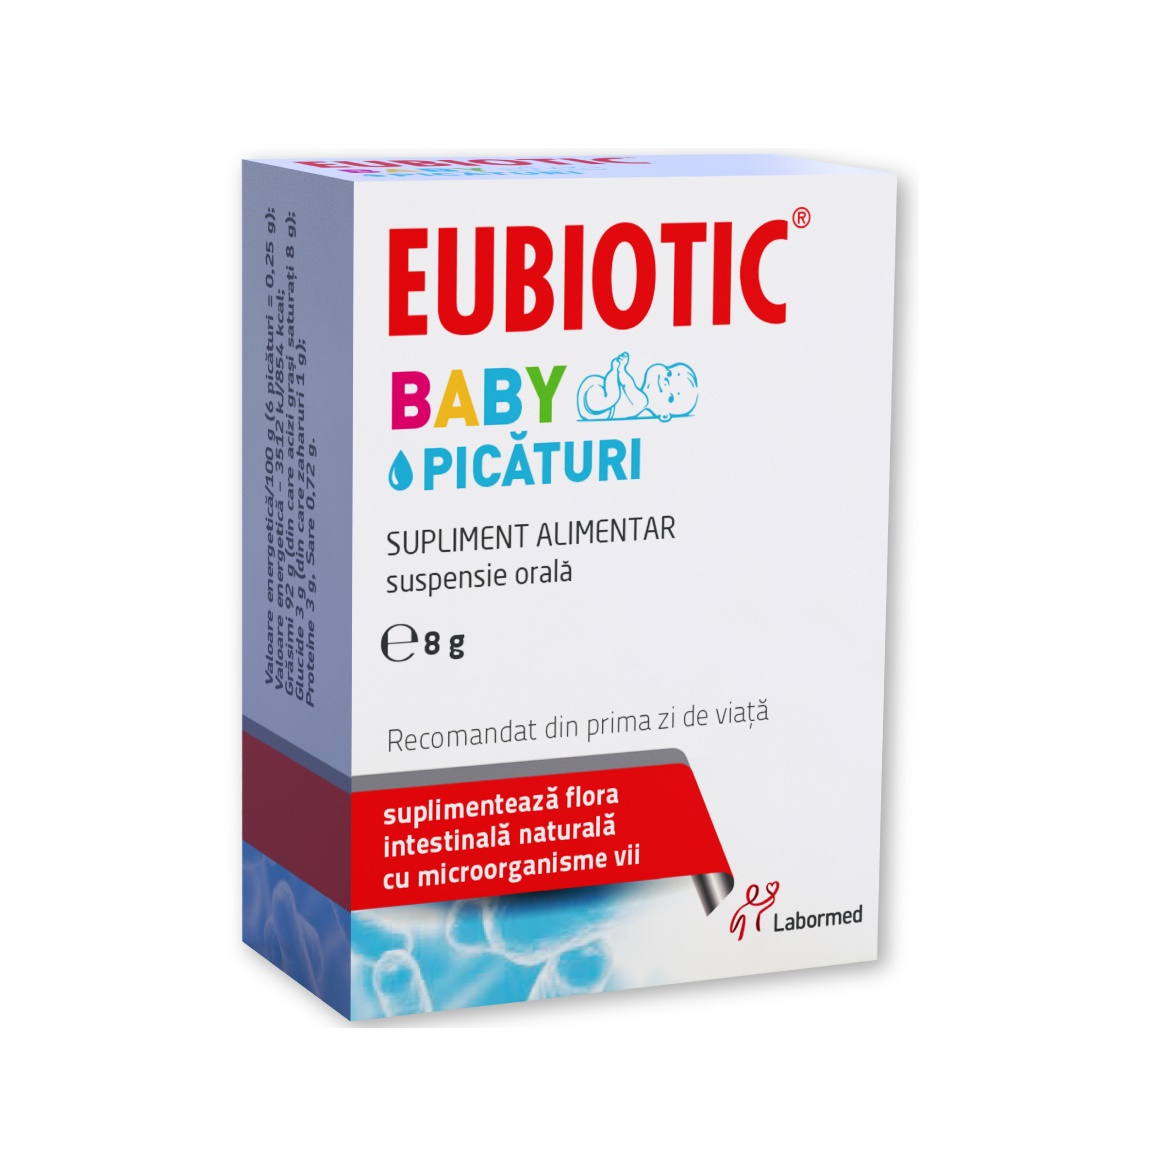 Probiotice si prebiotice - Eubiotic Baby picaturi 1 flacon x 8 grame, medik-on.ro